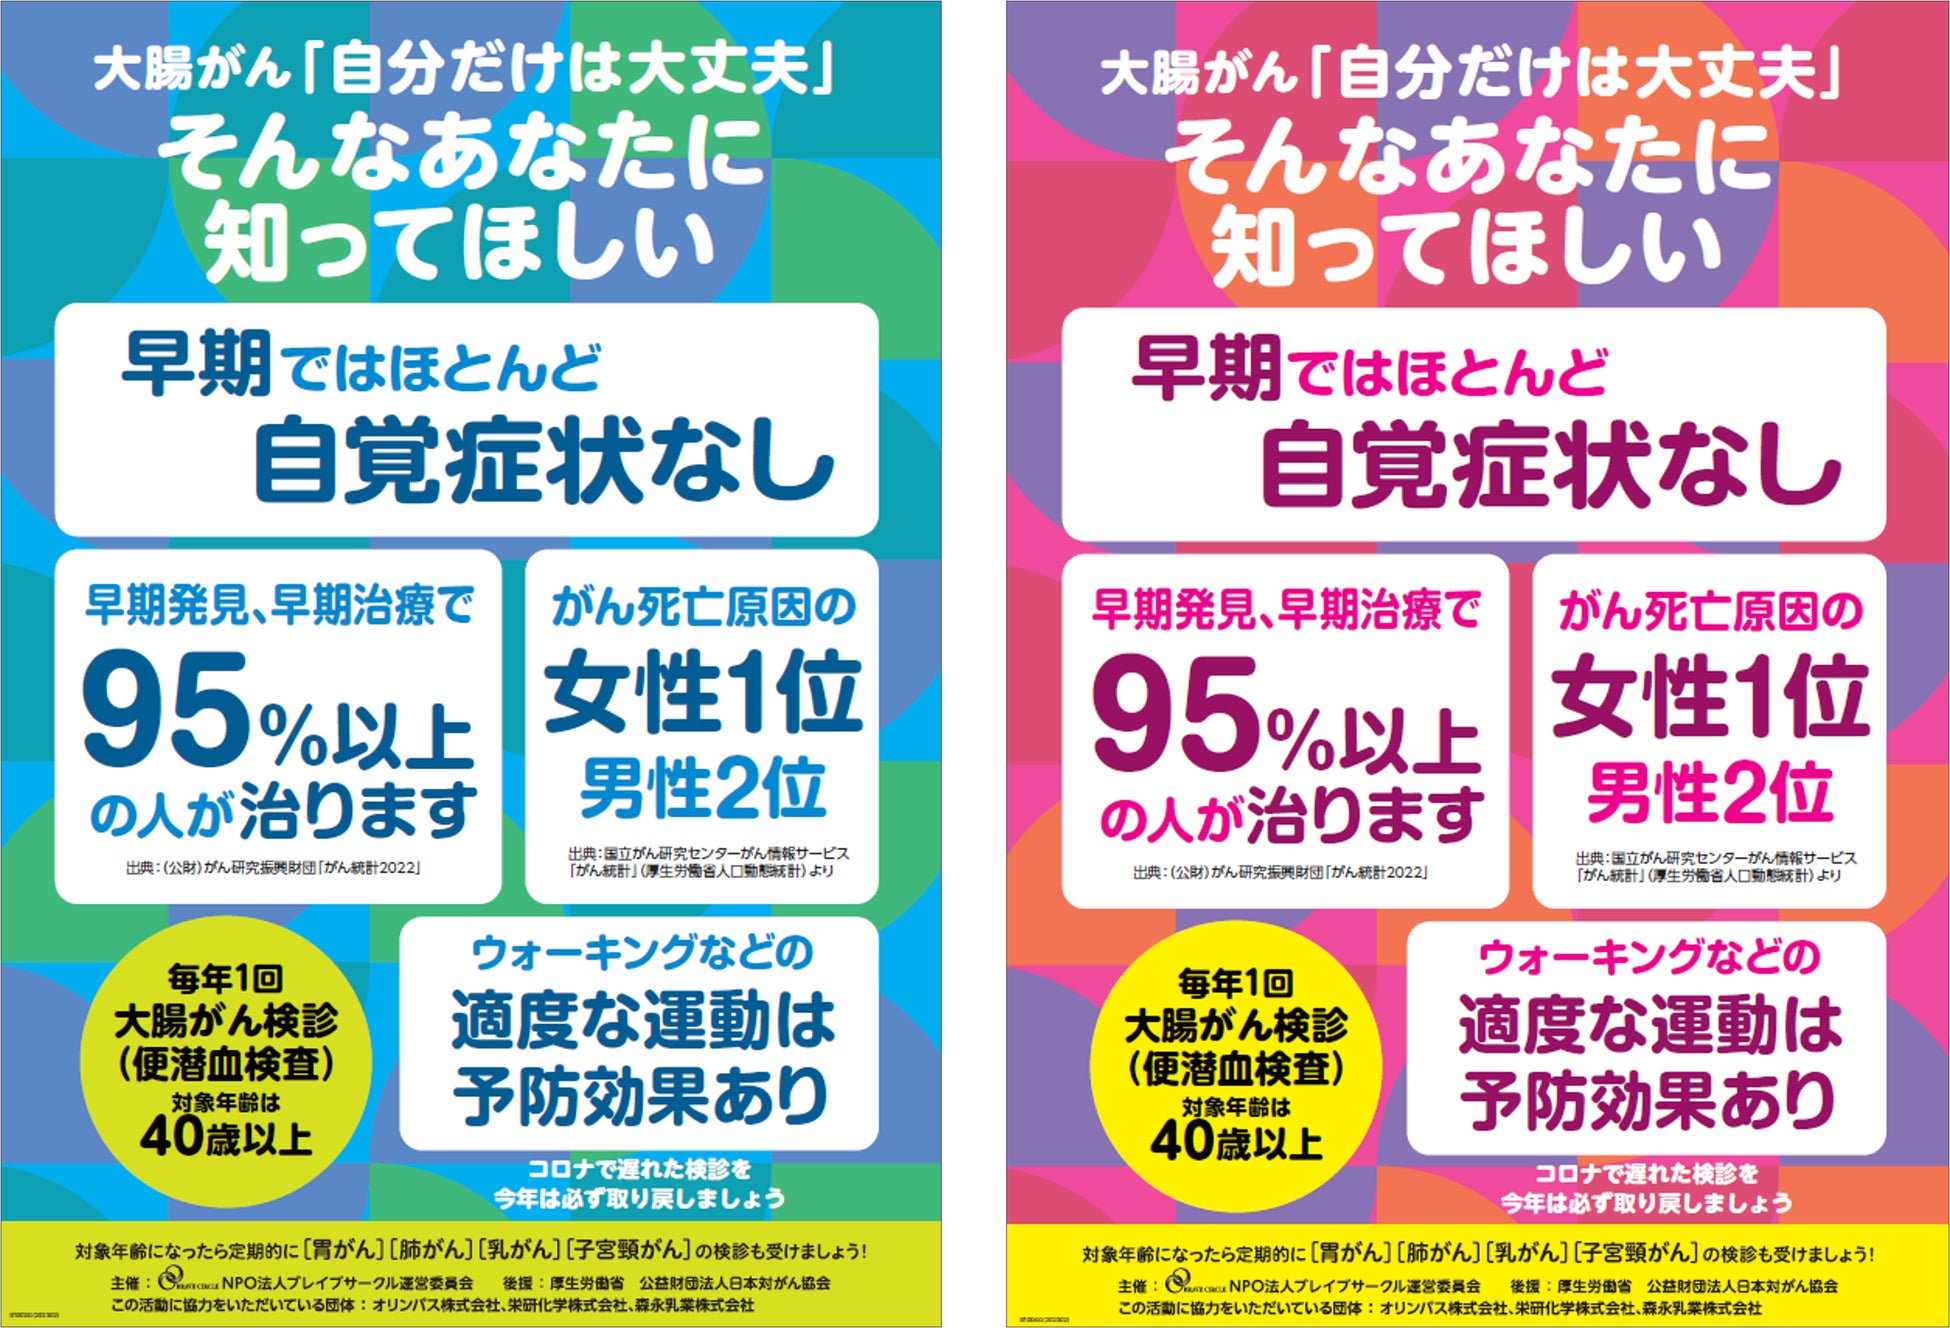 清泉女子大学と日本製紙パピリアが「BIOFEAT.」シリーズのスピンオフ商品『守結（まゆ）ハンドクリーム』を共同開発 — 2月14日から販売開始